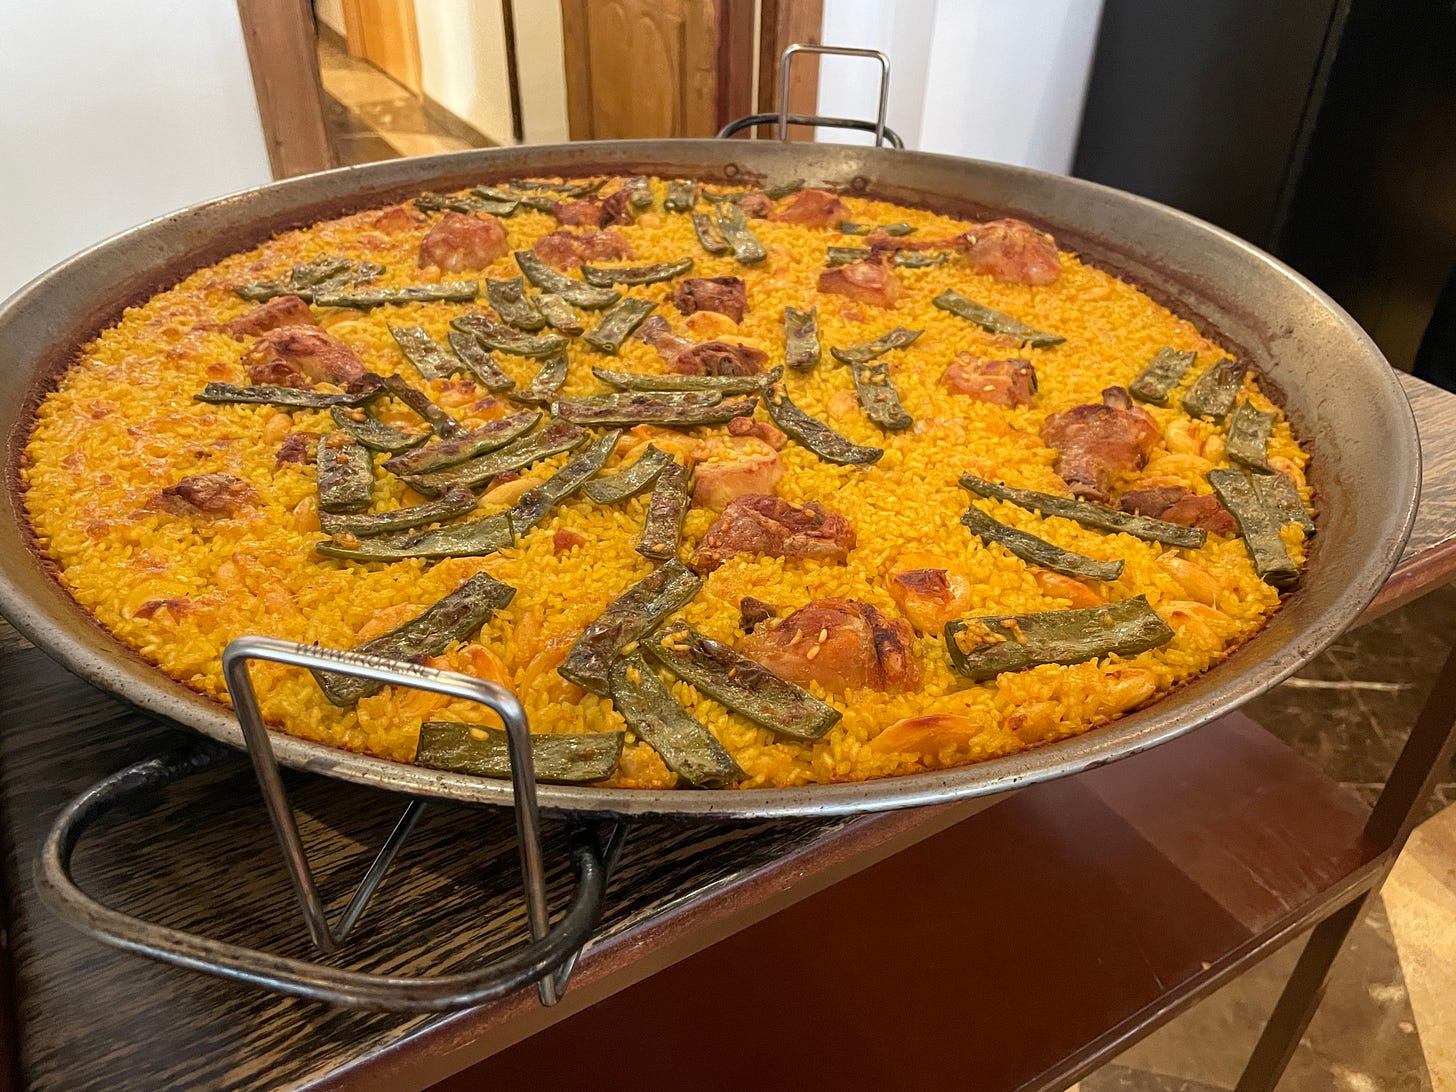 Paella in large pan